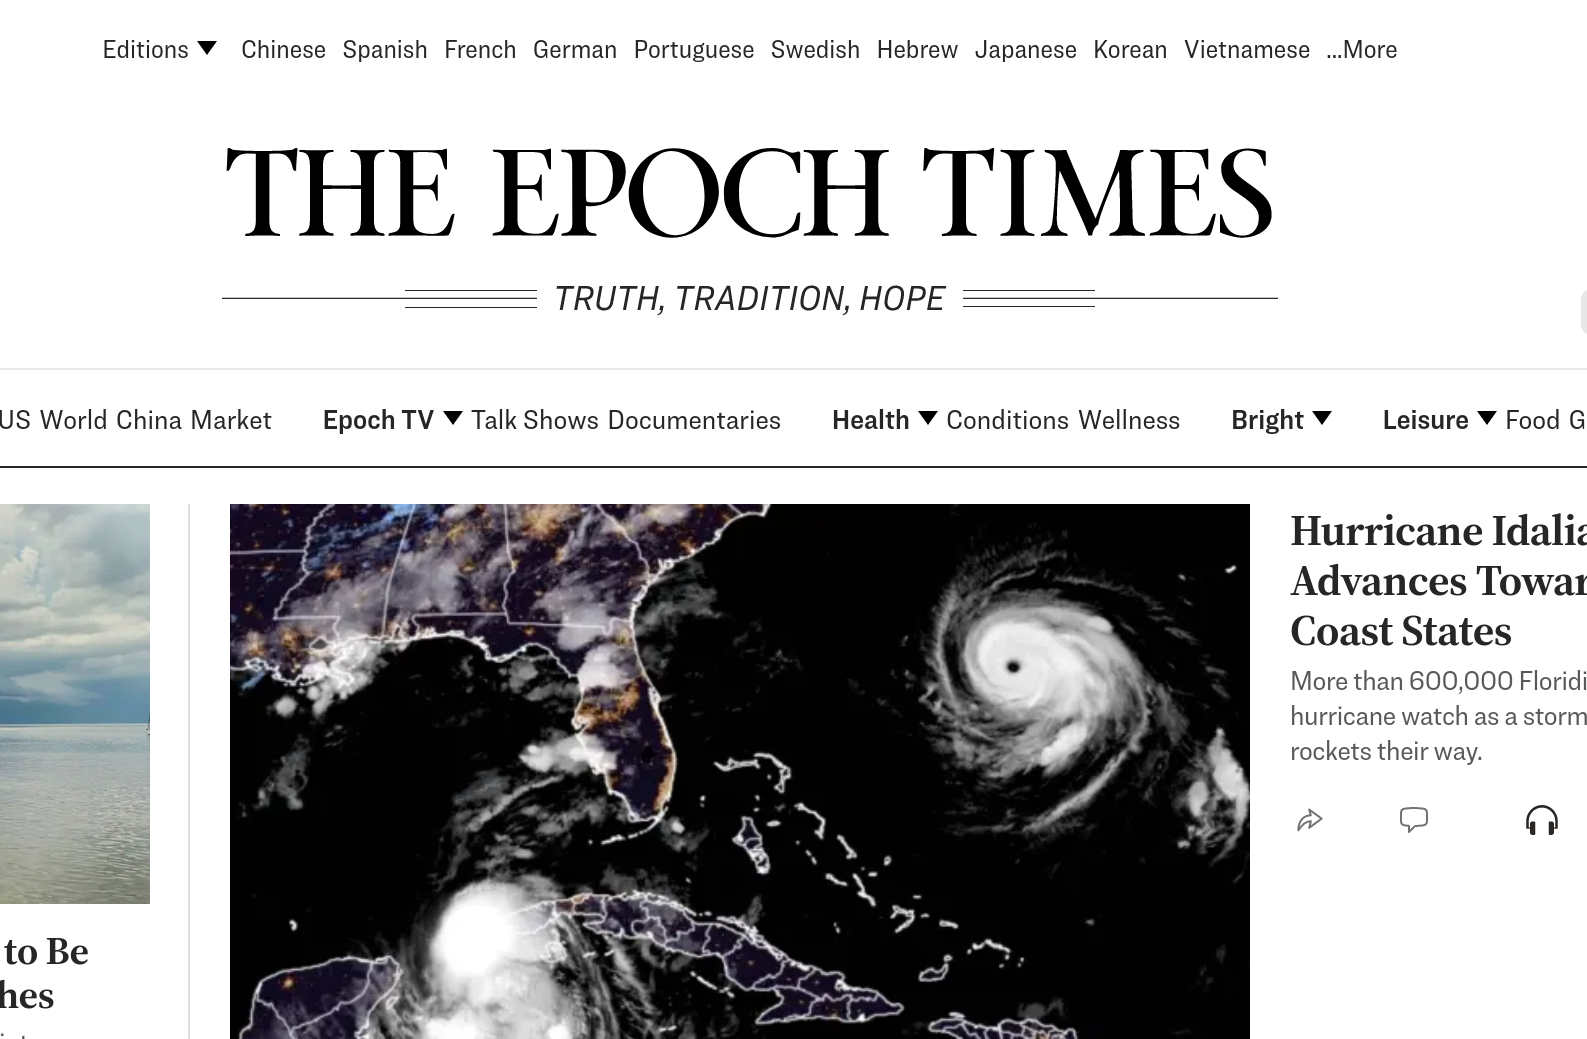 Амерички лист The Epoch Times разоткрио како функционишу западна цензура и диктат